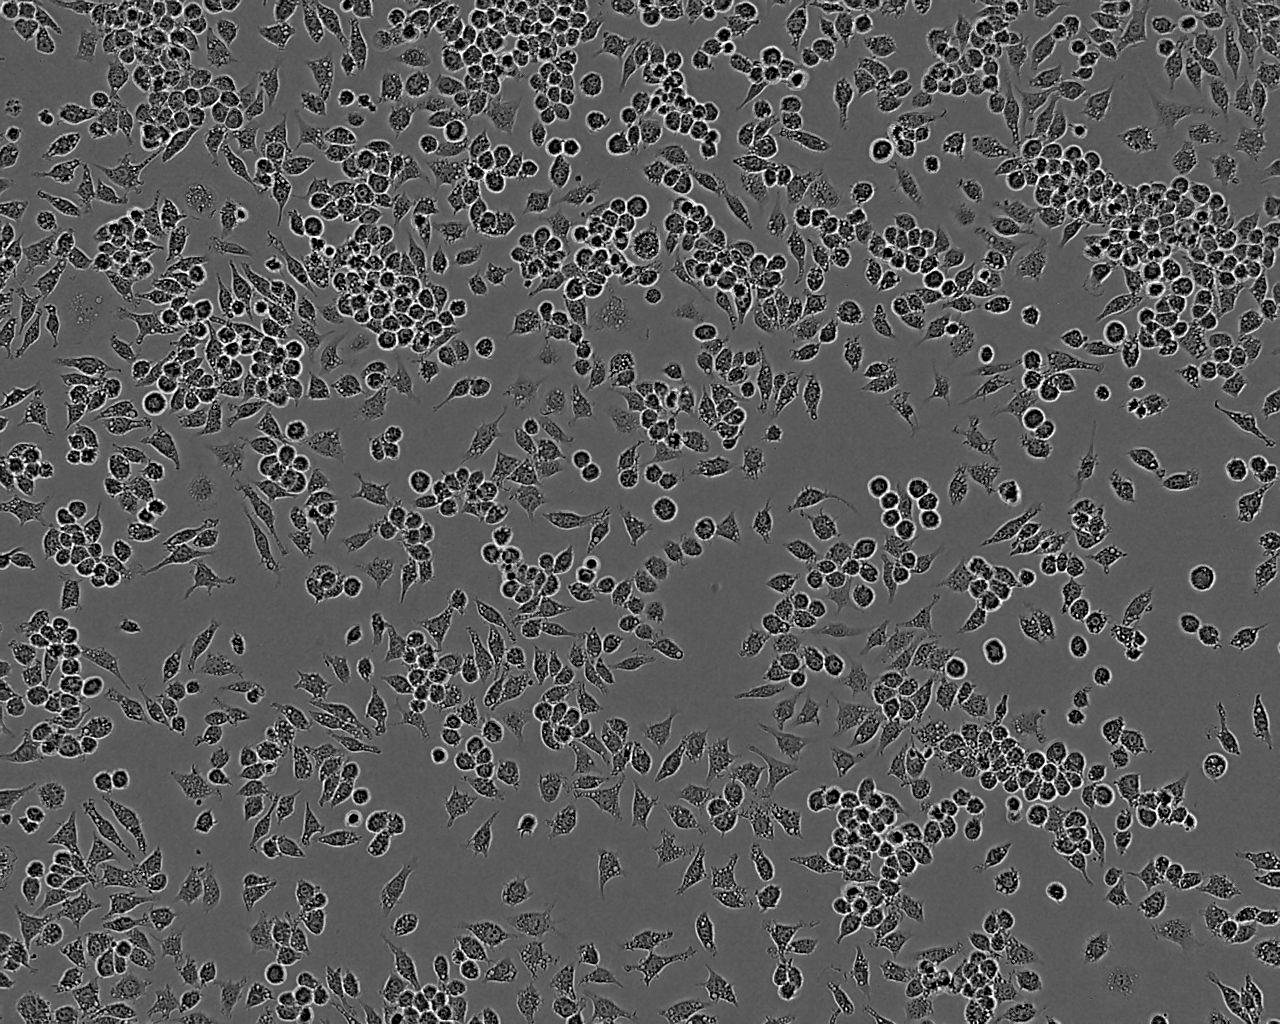 HLF-a epithelioid cells人肺细胞系,HLF-a epithelioid cells